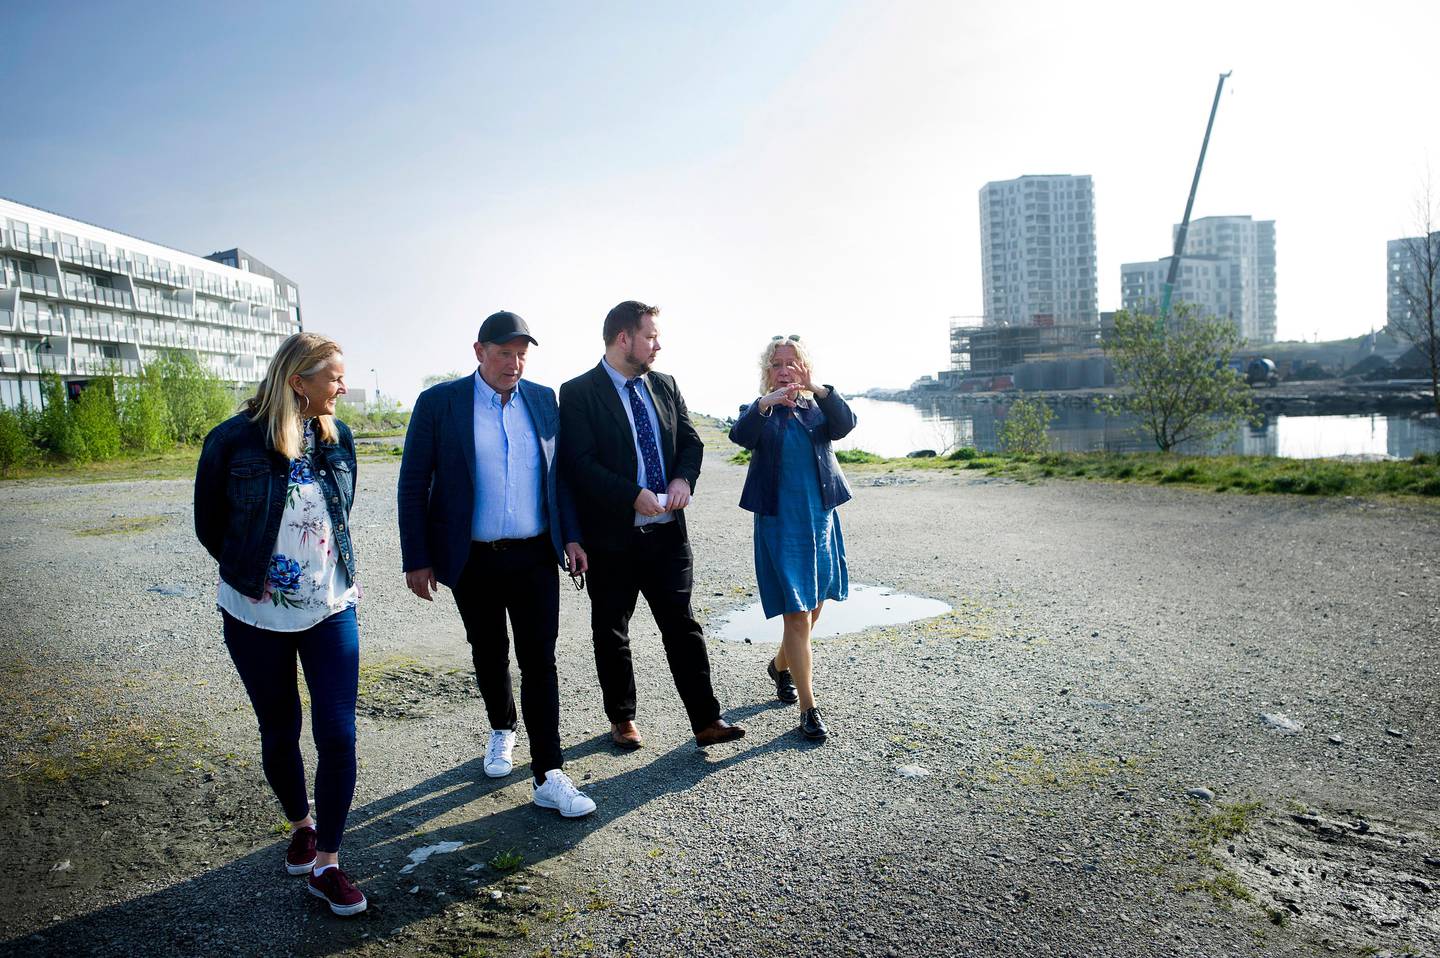 Den nye parken i Lervig i Stavanger skal stå klar i september i år. 

T.h.:  Grete Kvalheim (Frp), Erlend Jordal (Høyre), Roar Houen (Venstre)  og Anne Kristin Bruns (KrF).

Lervigparken